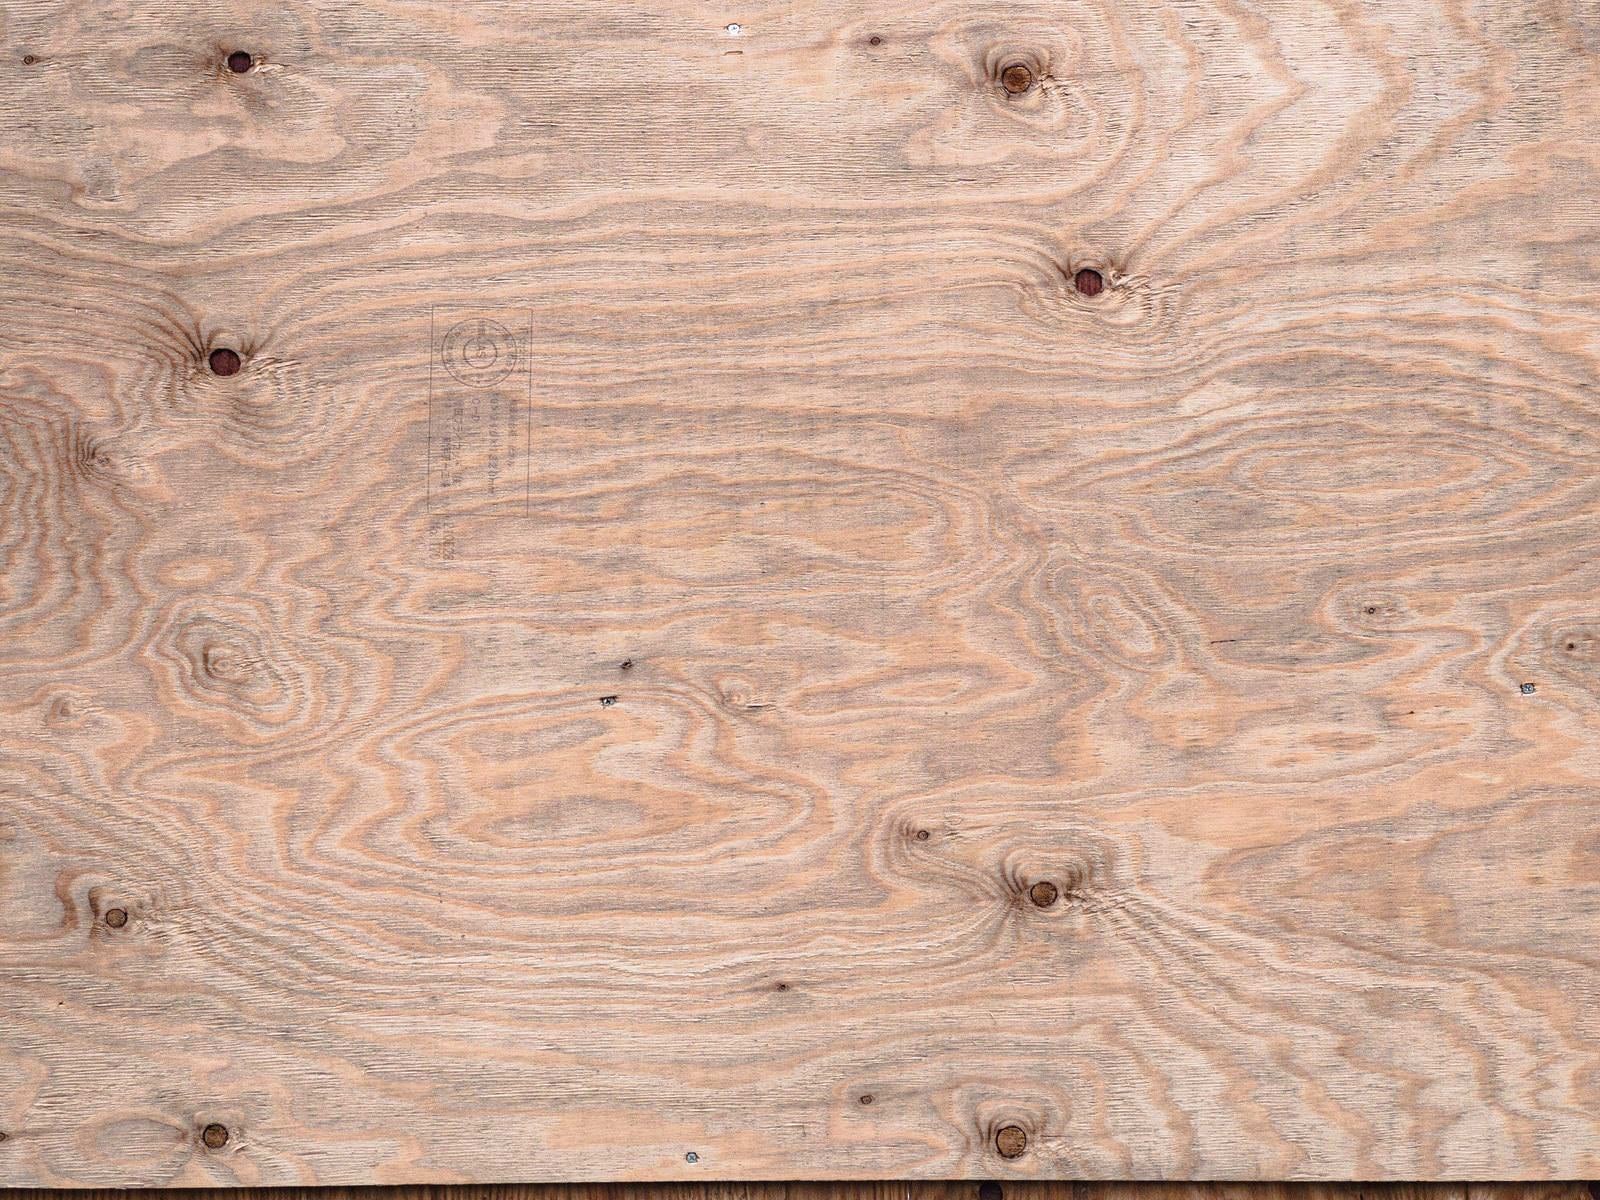 「ベニヤ板と木目のテクスチャー」の写真